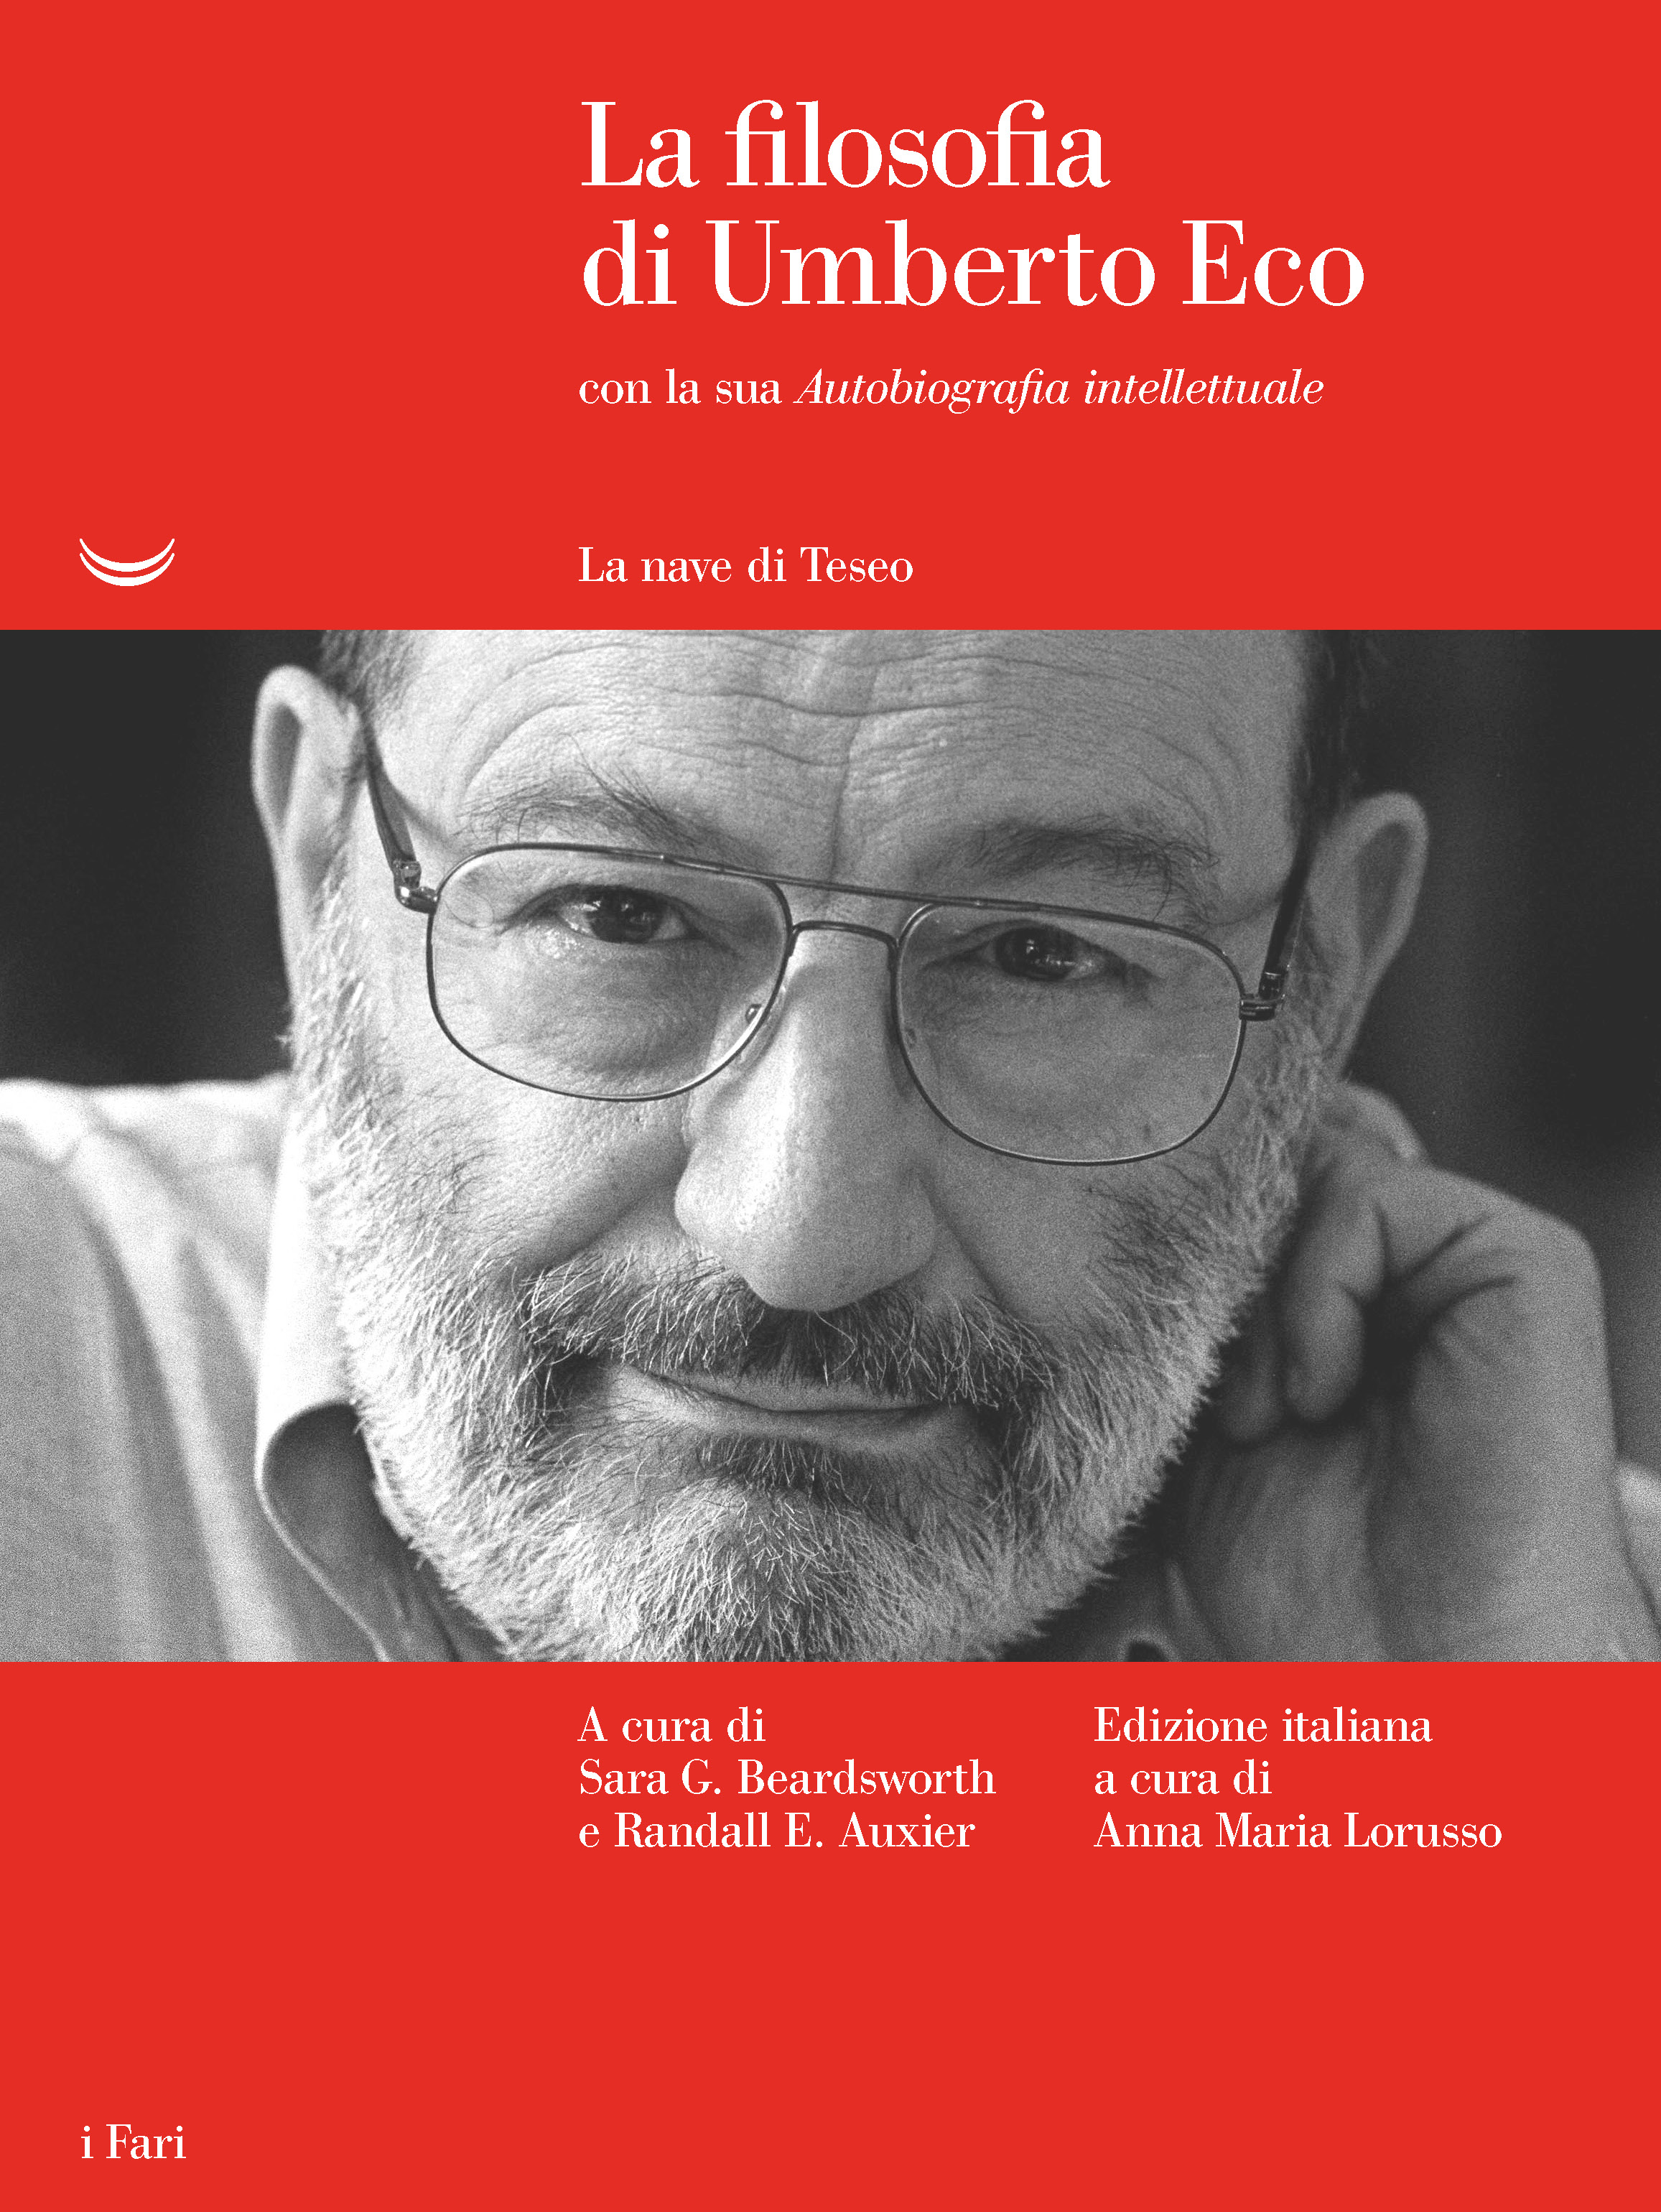 La filosofia di Umberto Eco. Con la sua Autobiografia intellettuale